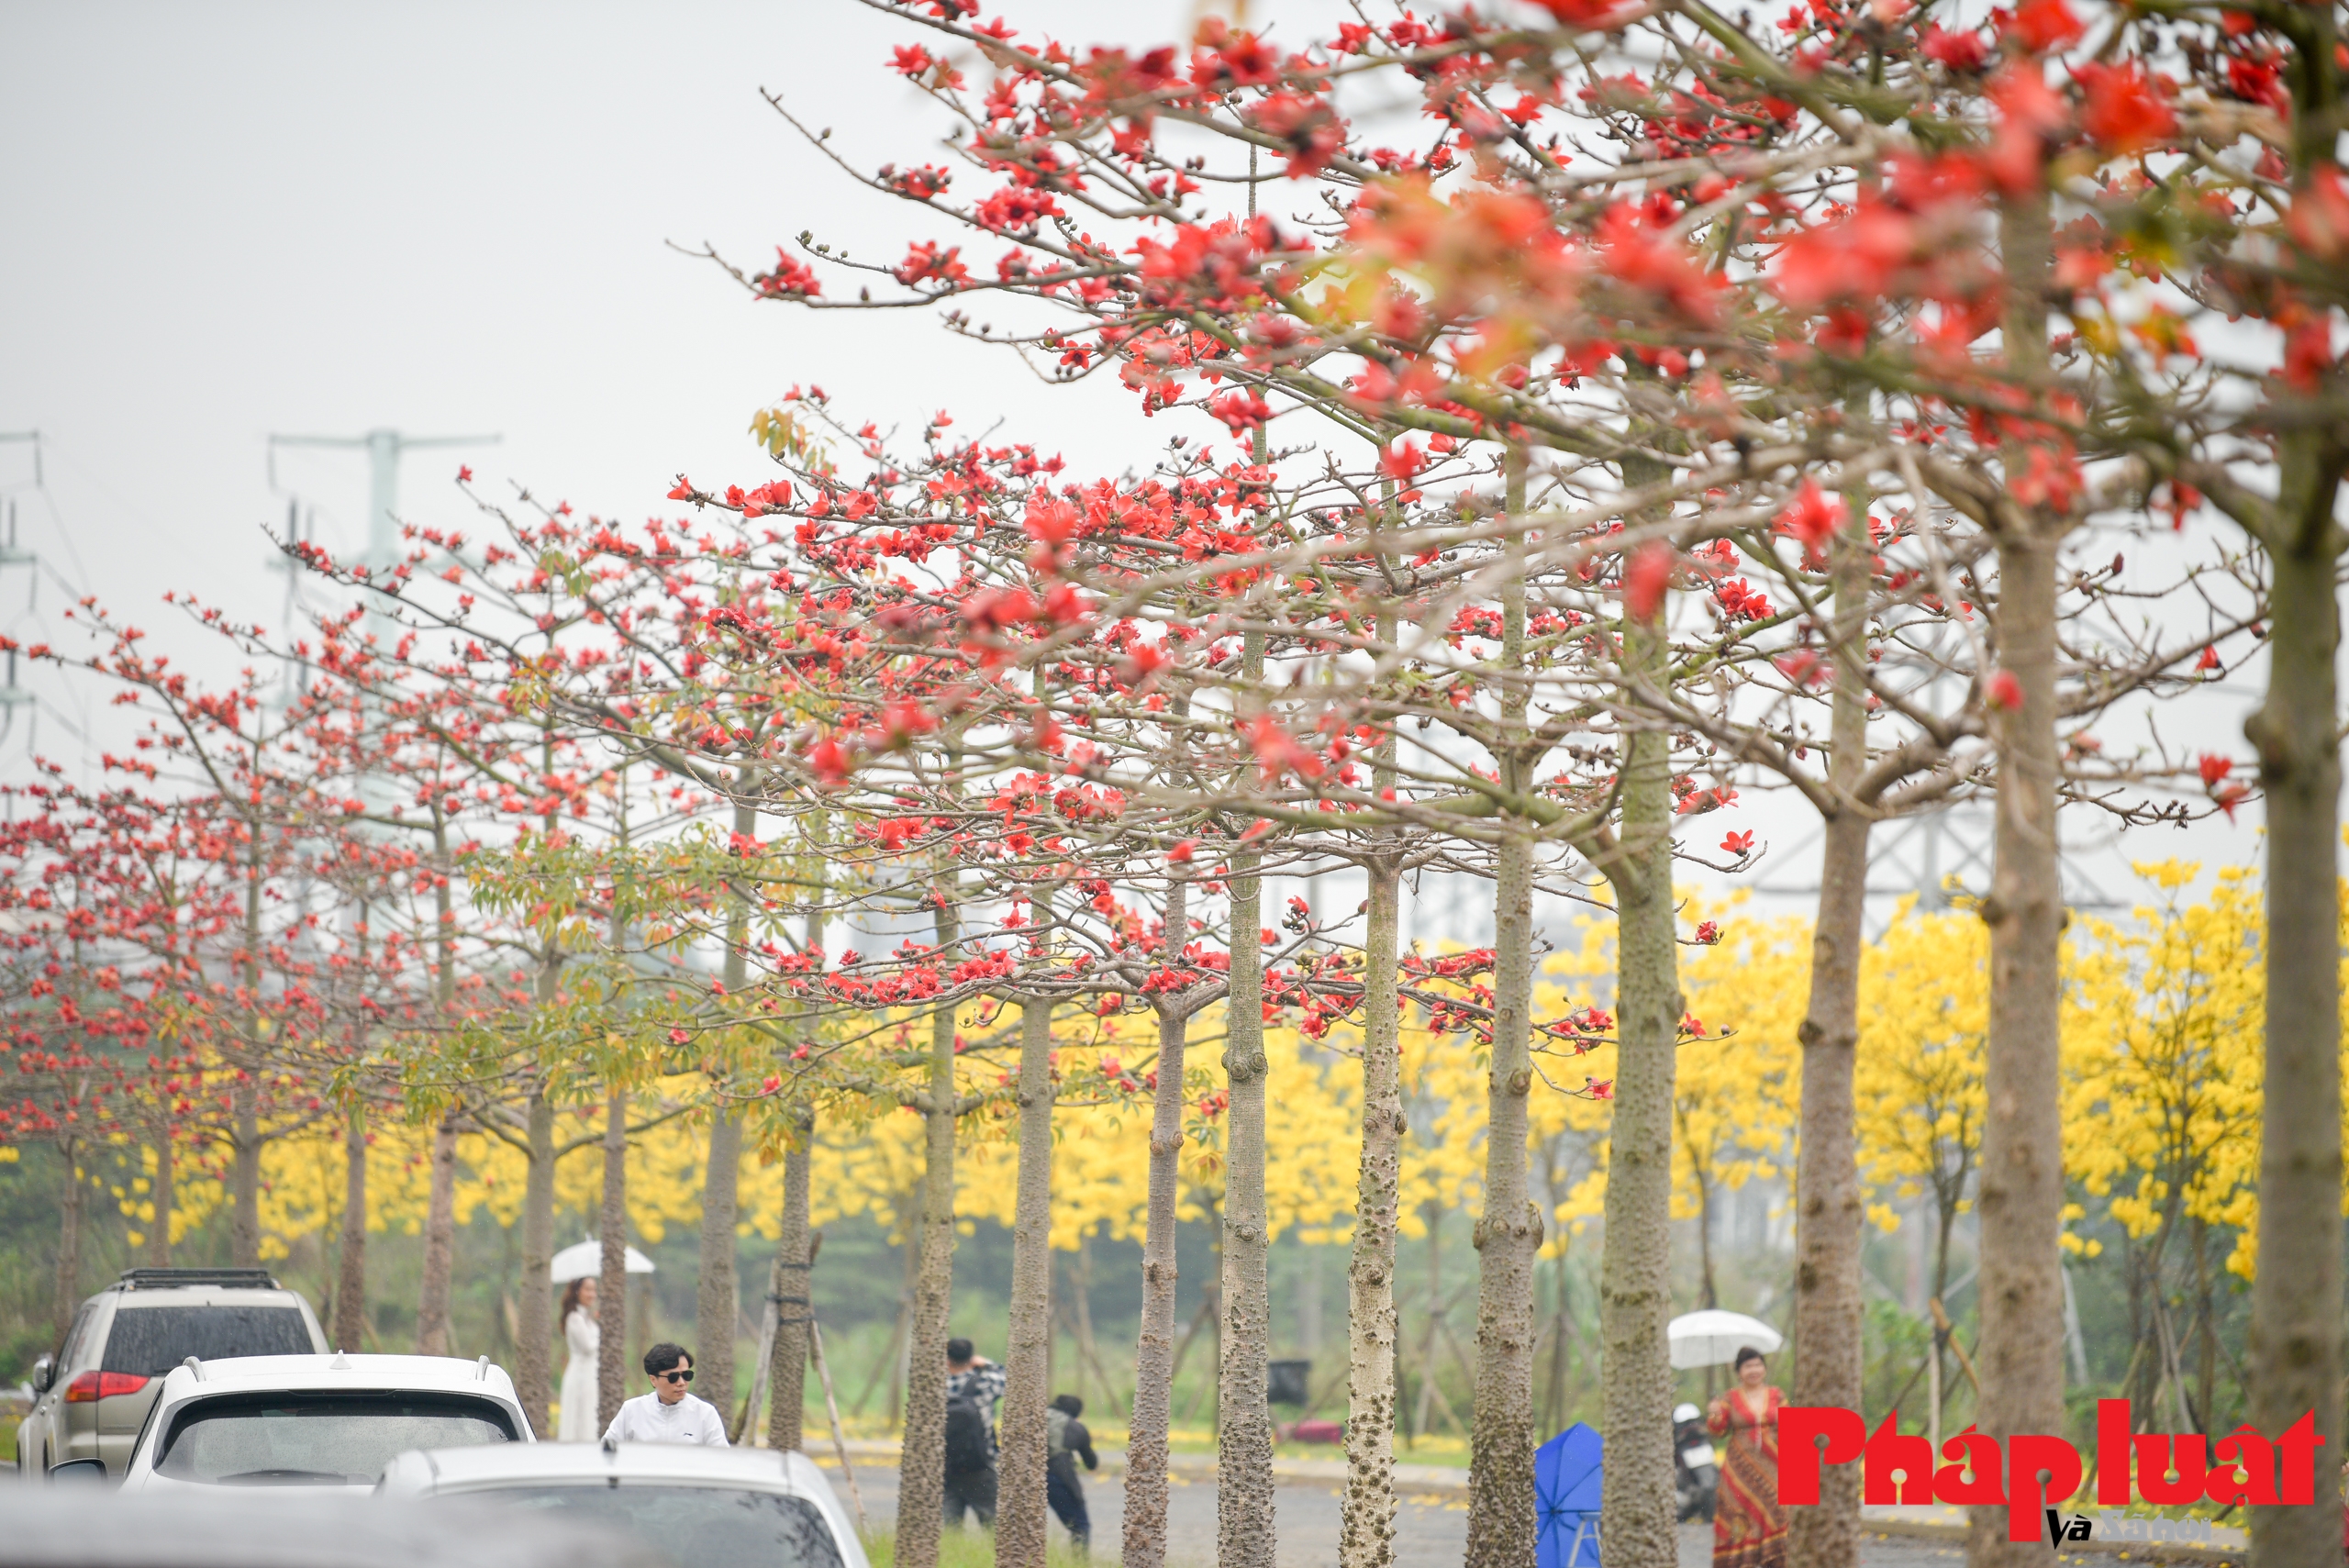 Mê mẩn ngắm đường cây Phong Linh rực vàng cuối xuân